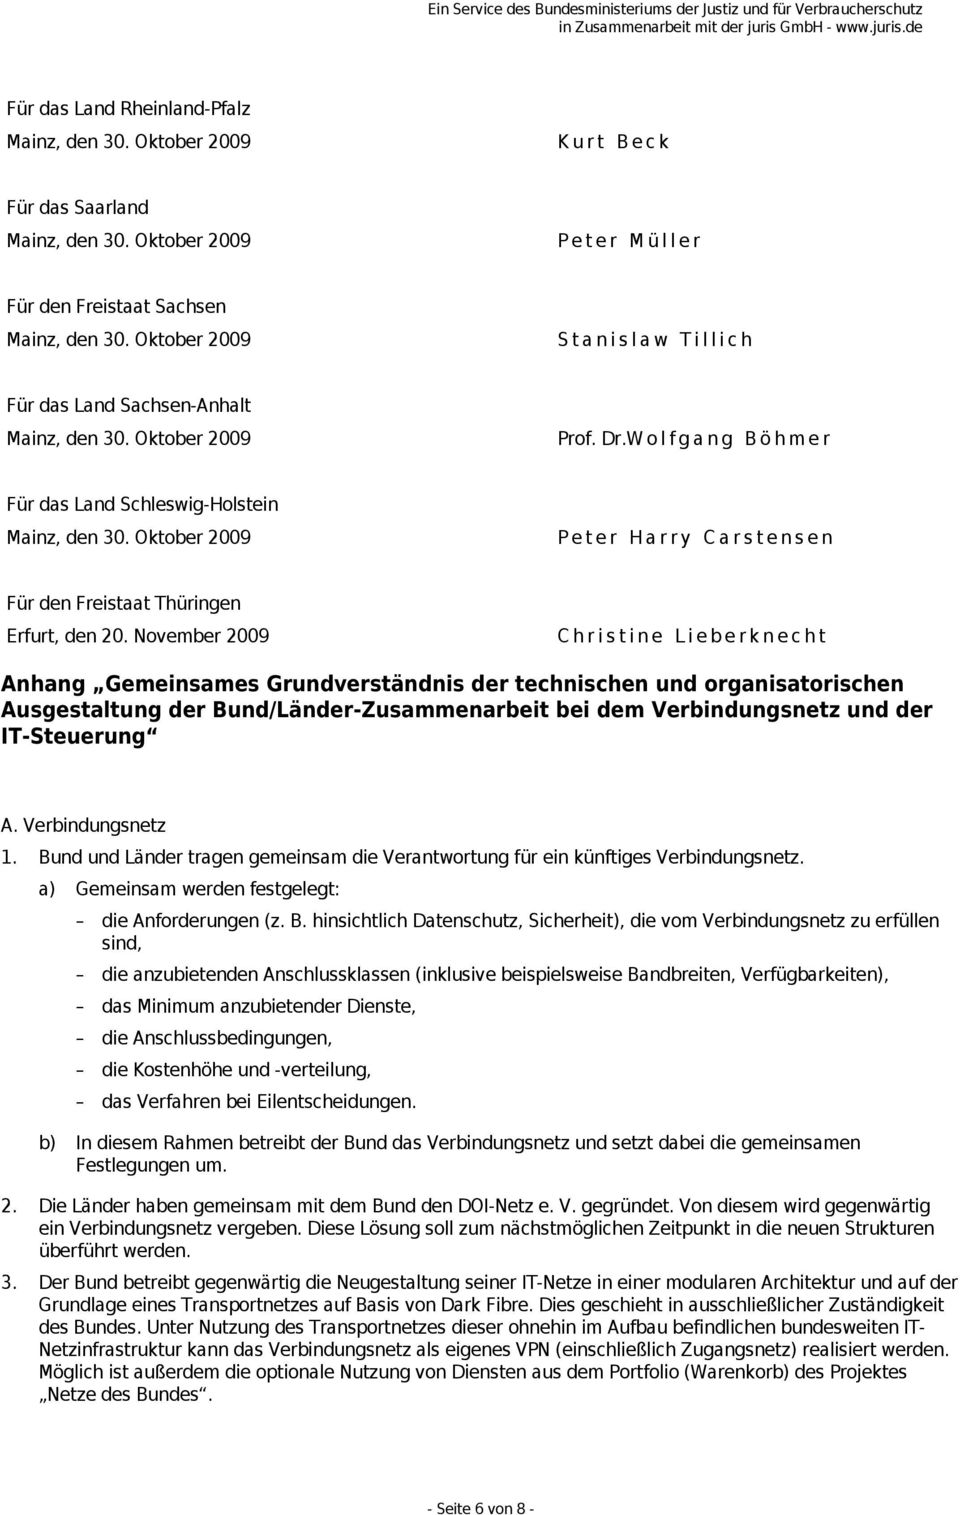 November 2009 Christine Lieberknecht Anhang Gemeinsames Grundverständnis der technischen und organisatorischen Ausgestaltung der Bund/Länder-Zusammenarbeit bei dem Verbindungsnetz und der